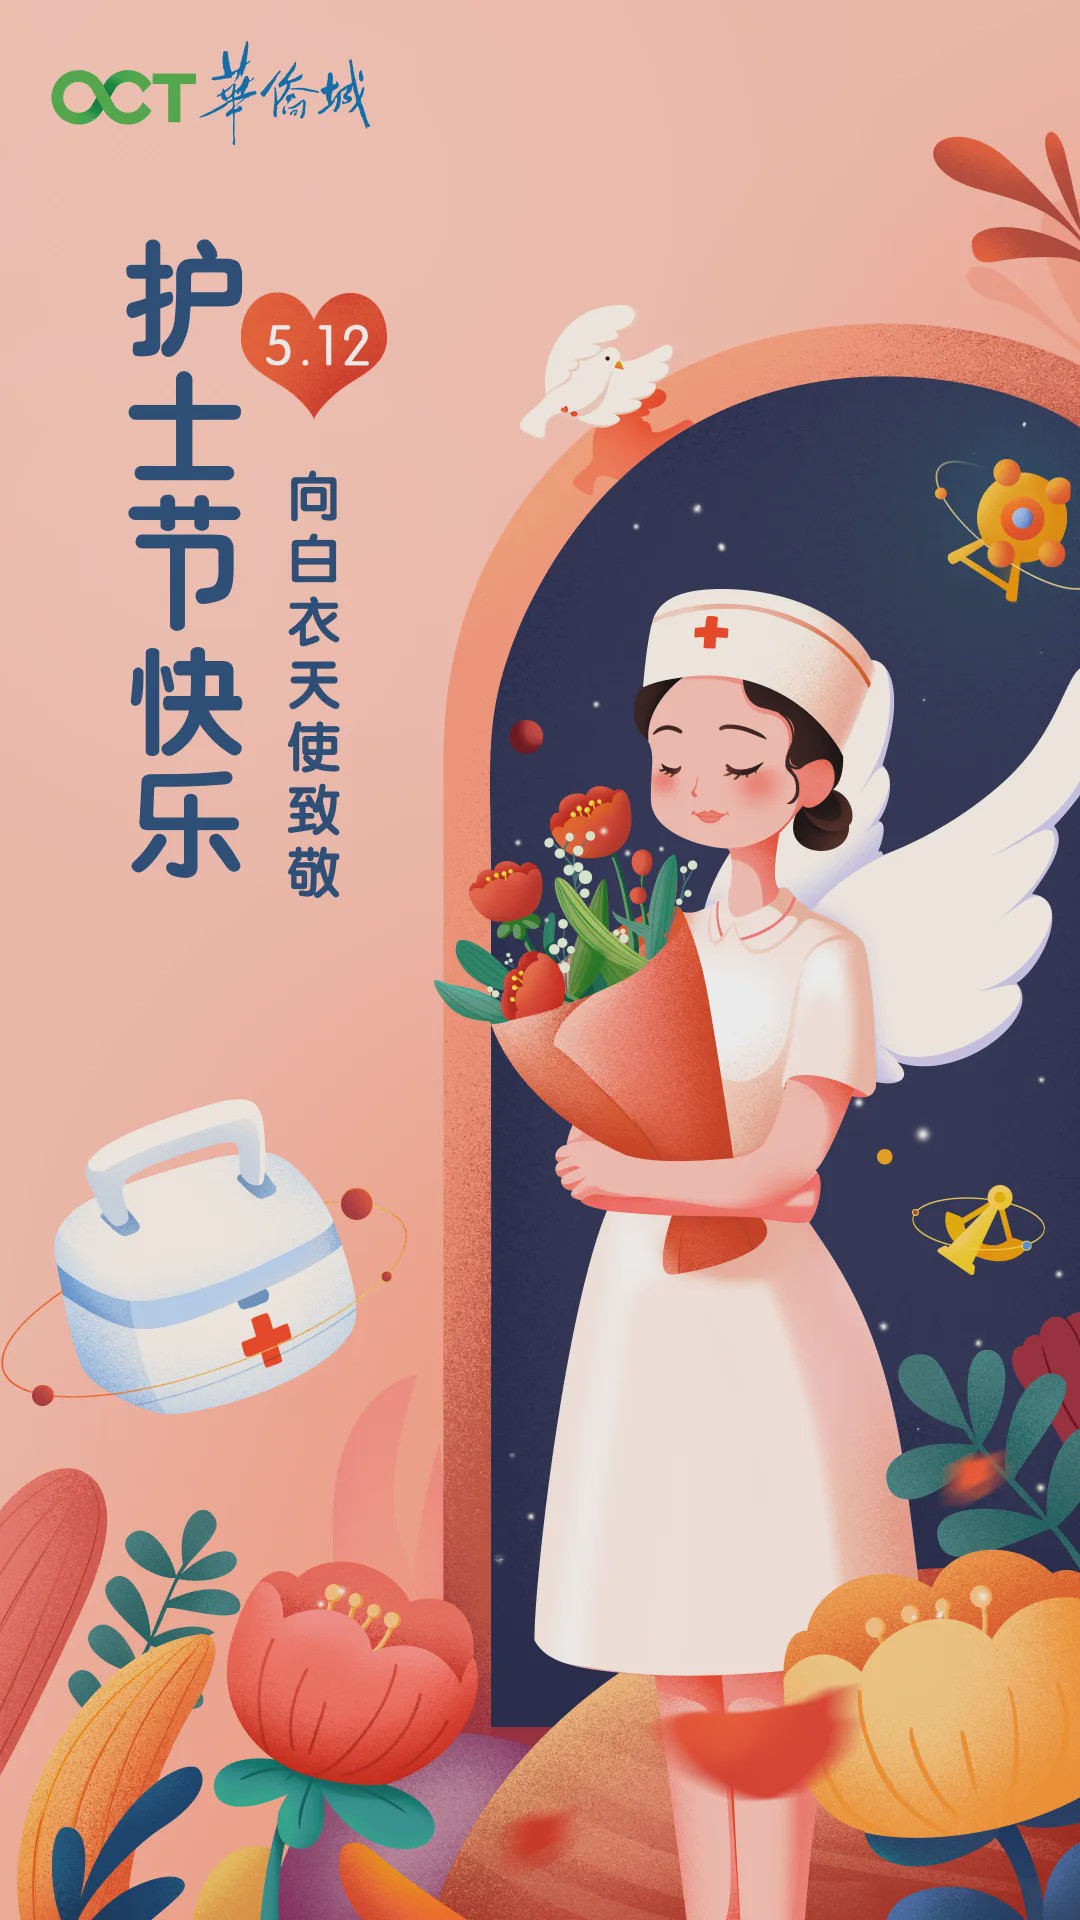 512国际护士节丨华侨城致敬医护礼赞天使